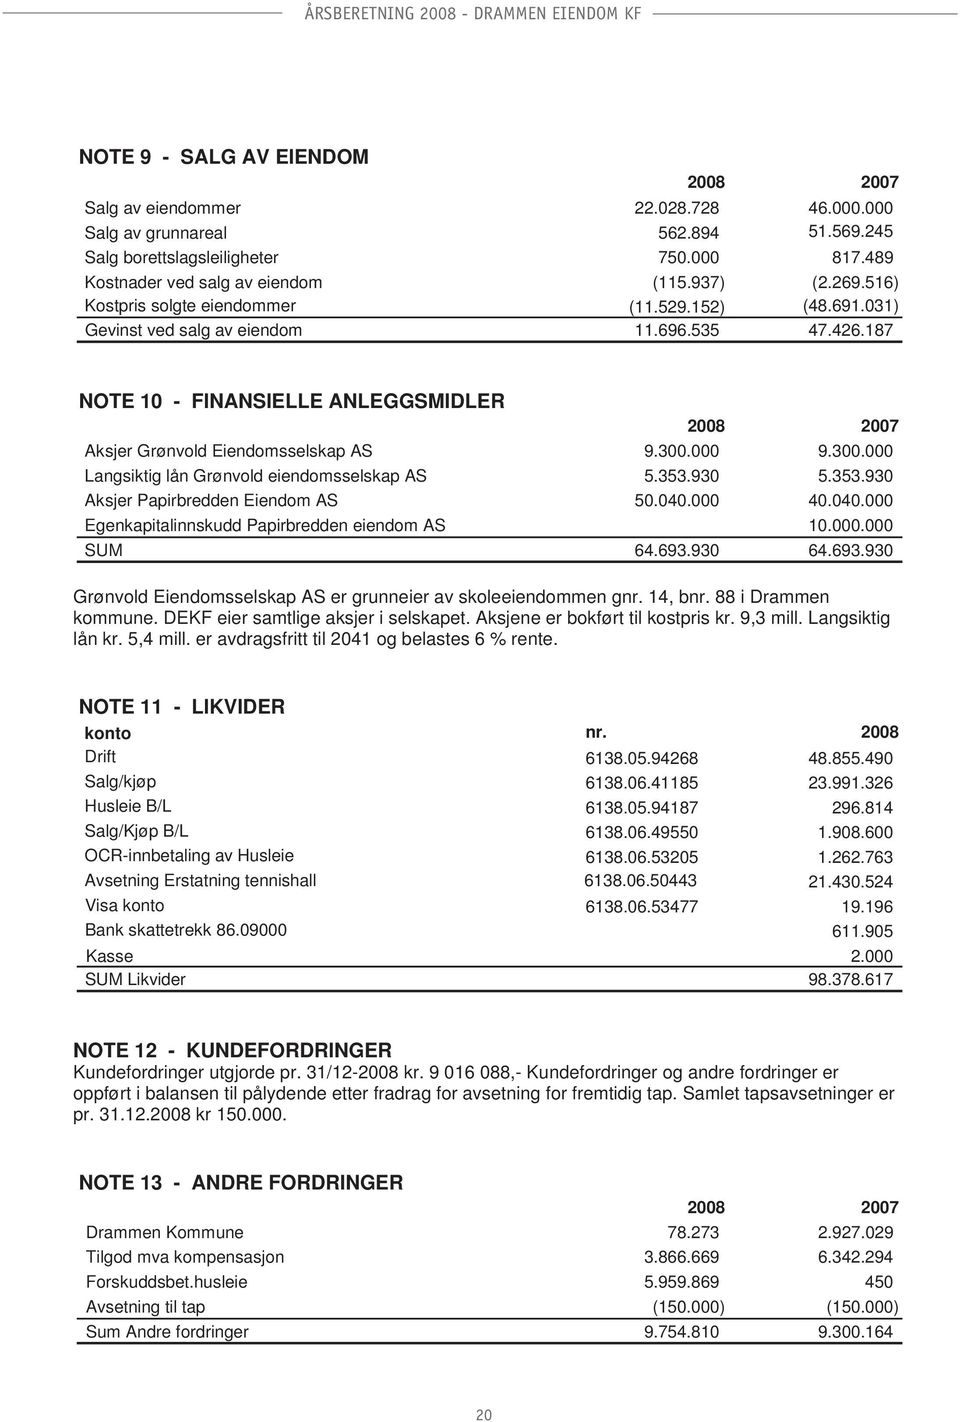 187 NOTE 10 - FINANSIELLE ANLEGGSMIDLER 2008 2007 Aksjer Grønvold Eiendomsselskap AS 9.300.000 9.300.000 Langsiktig lån Grønvold eiendomsselskap AS 5.353.930 5.353.930 Aksjer Papirbredden Eiendom AS 50.